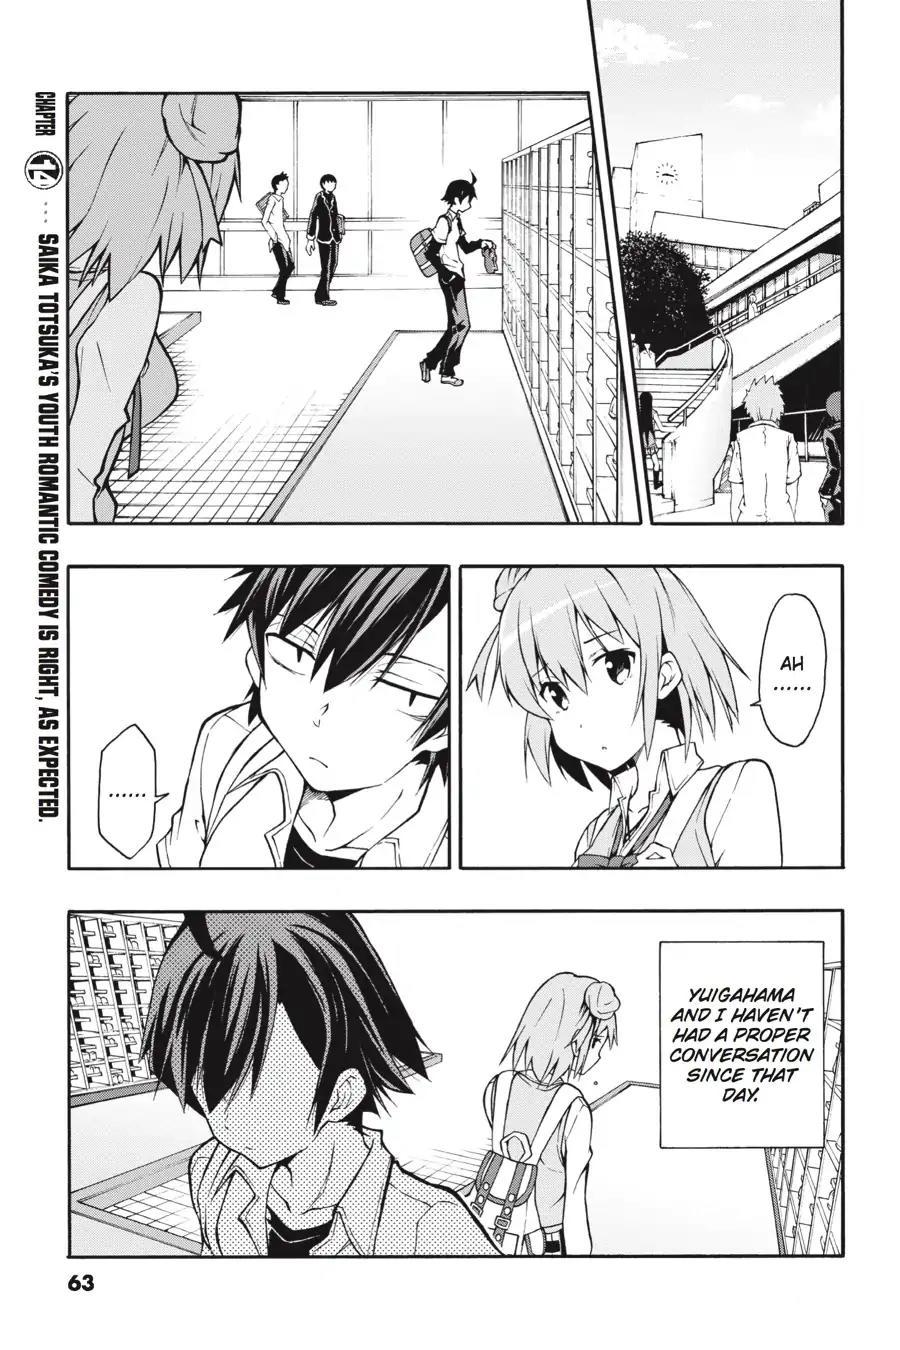 Yahari Ore no Seishun Love Come wa Machigatteiru @comic - MangaDex